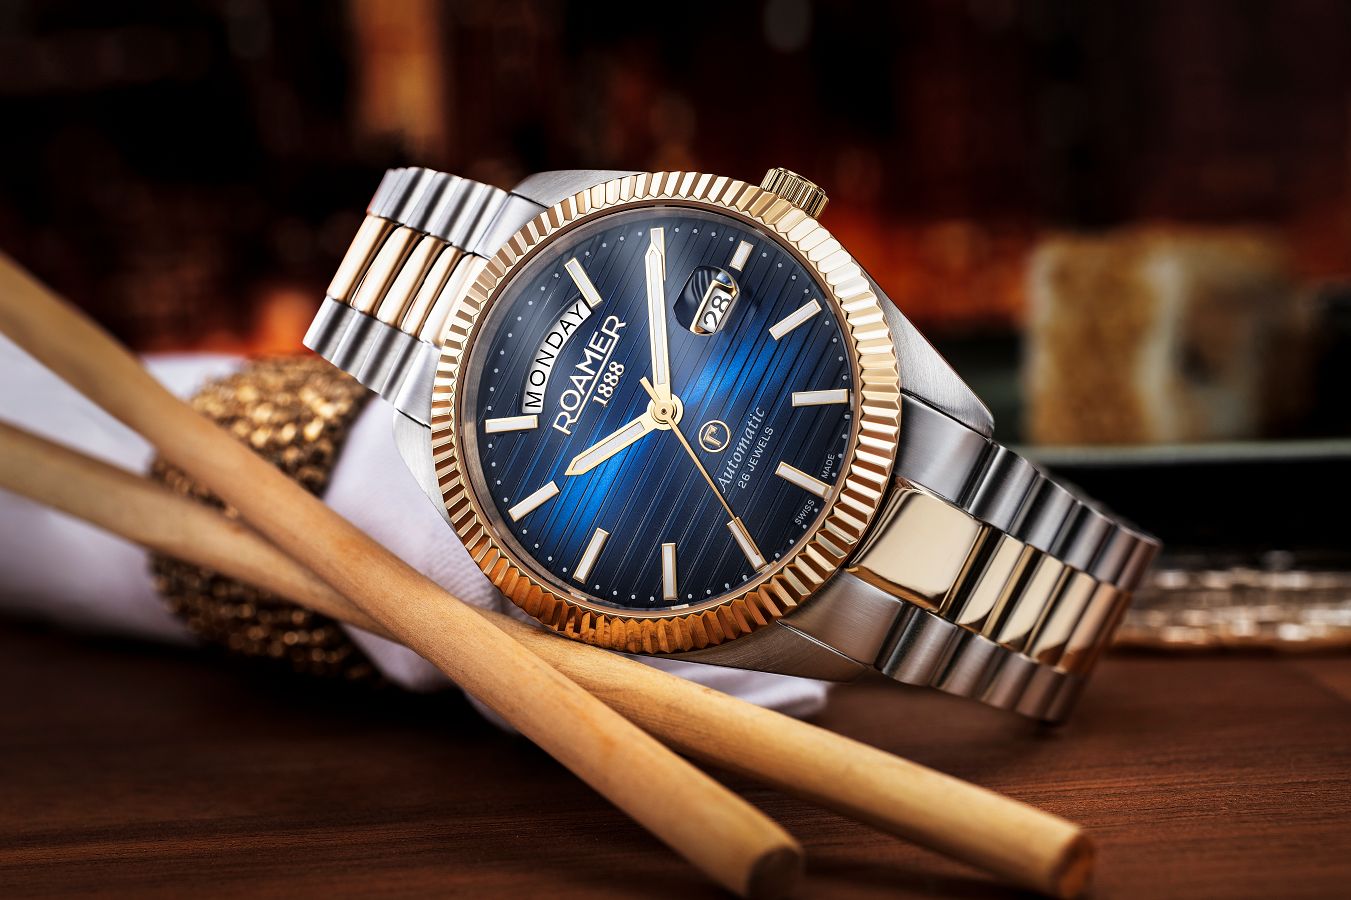 Dwa nowe zegarki mechaniczne Roamer: Searock II oraz Primeline DayDate II